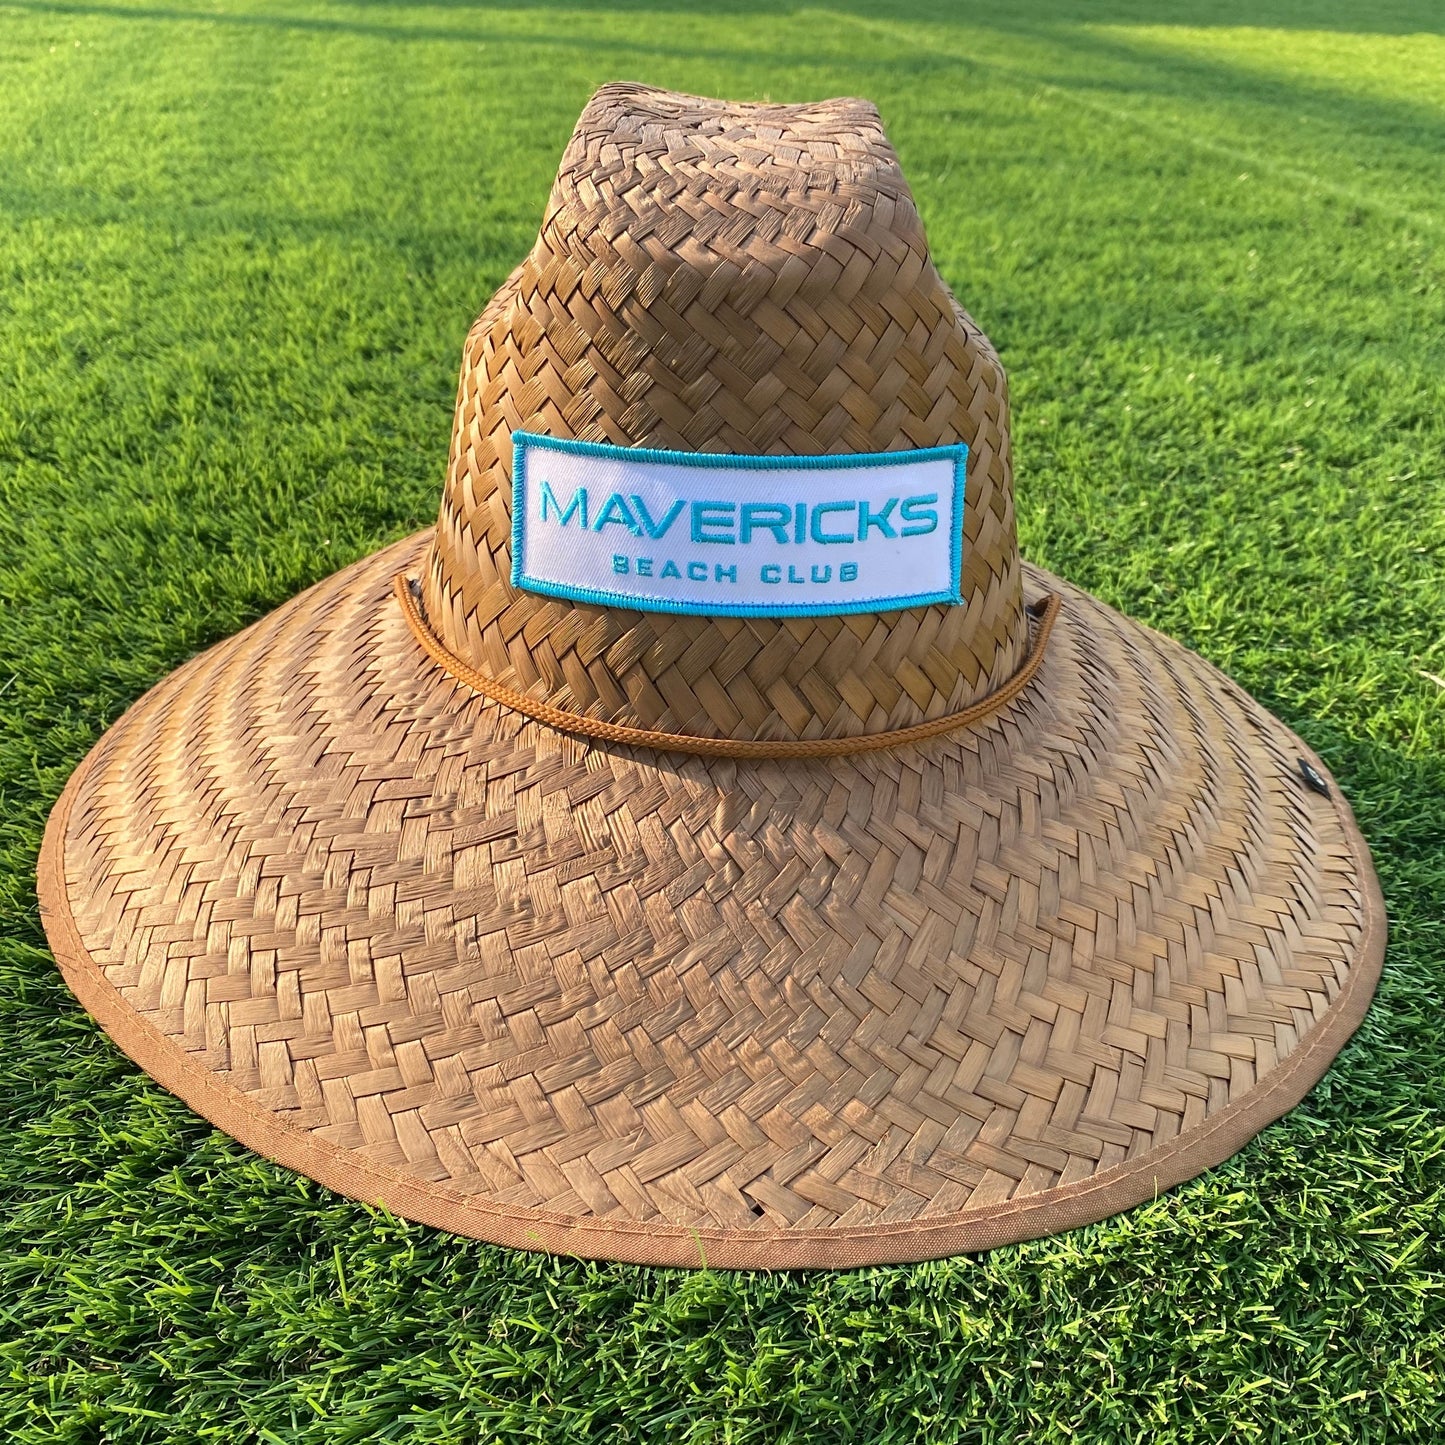  mavericks beach club merch, lifeguard hats, san diego, california